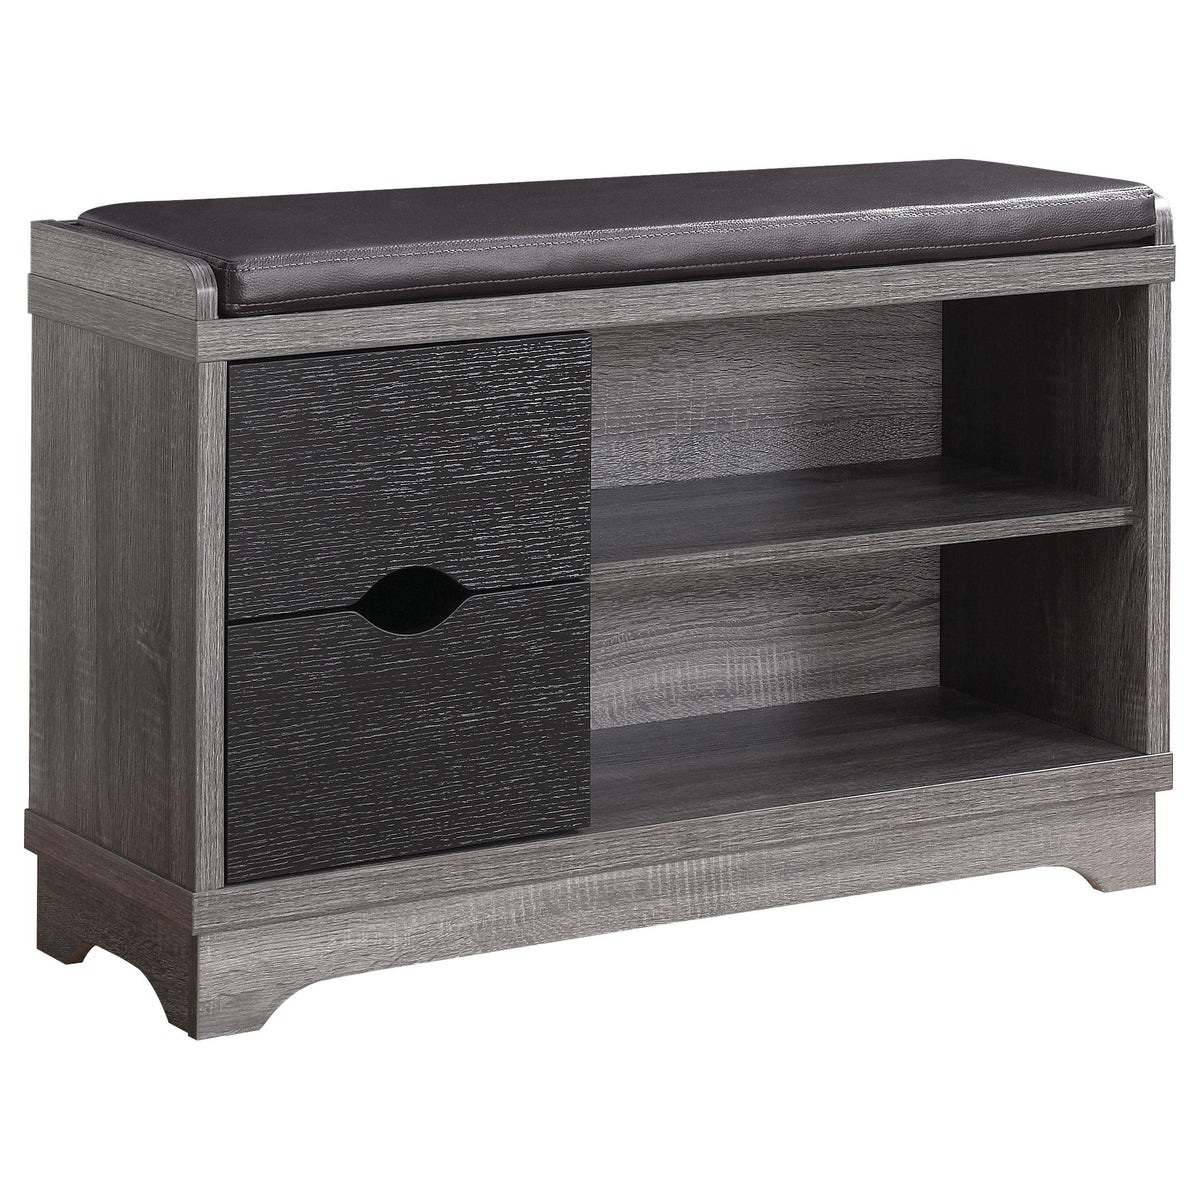 Aylin 2-drawer Storage Bench Medium Brown and Black  Half Price Furniture